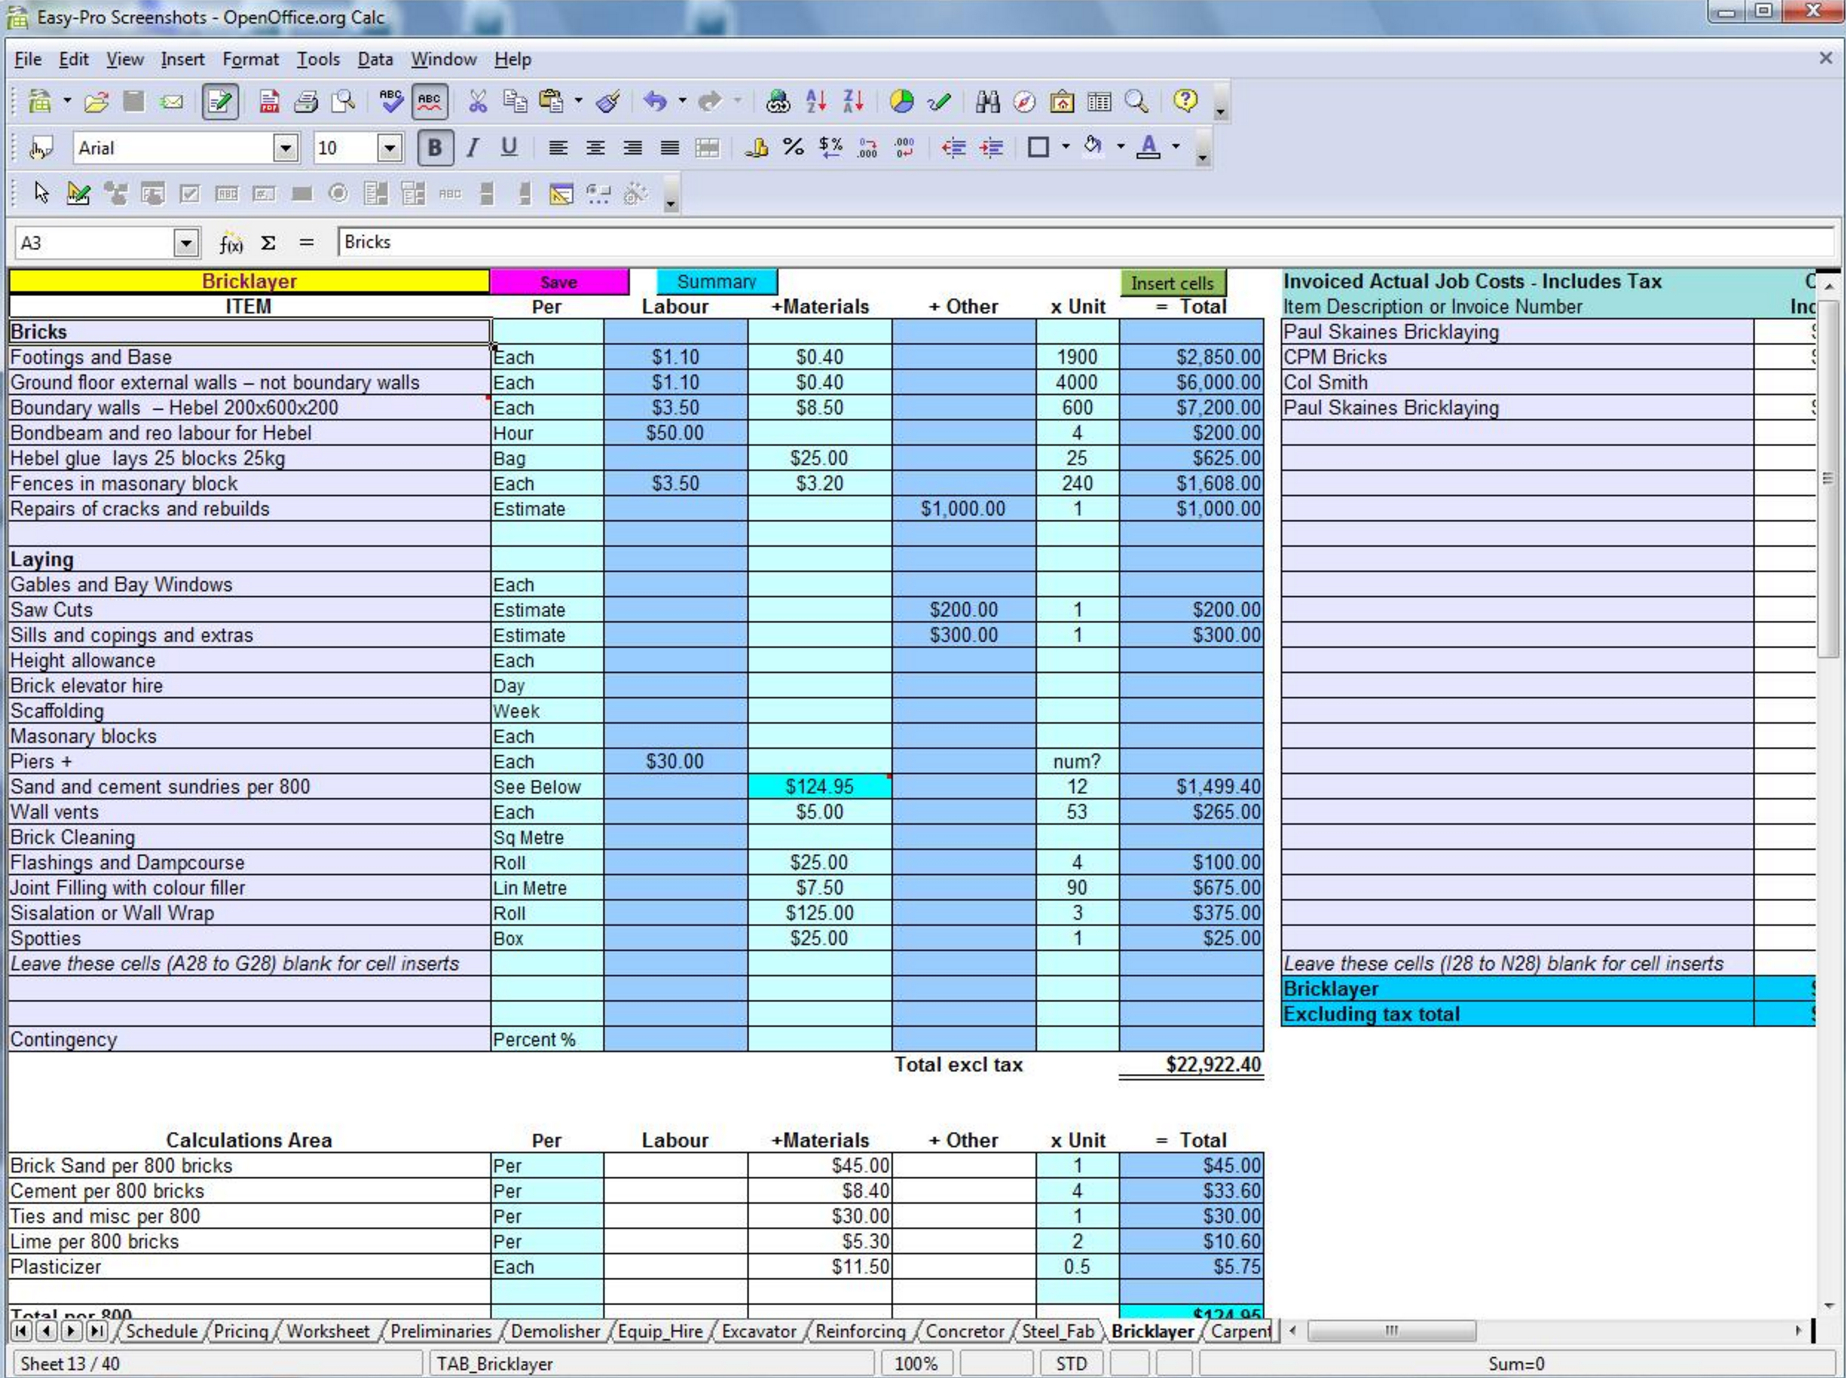 Construction Bid Comparison Template Excel